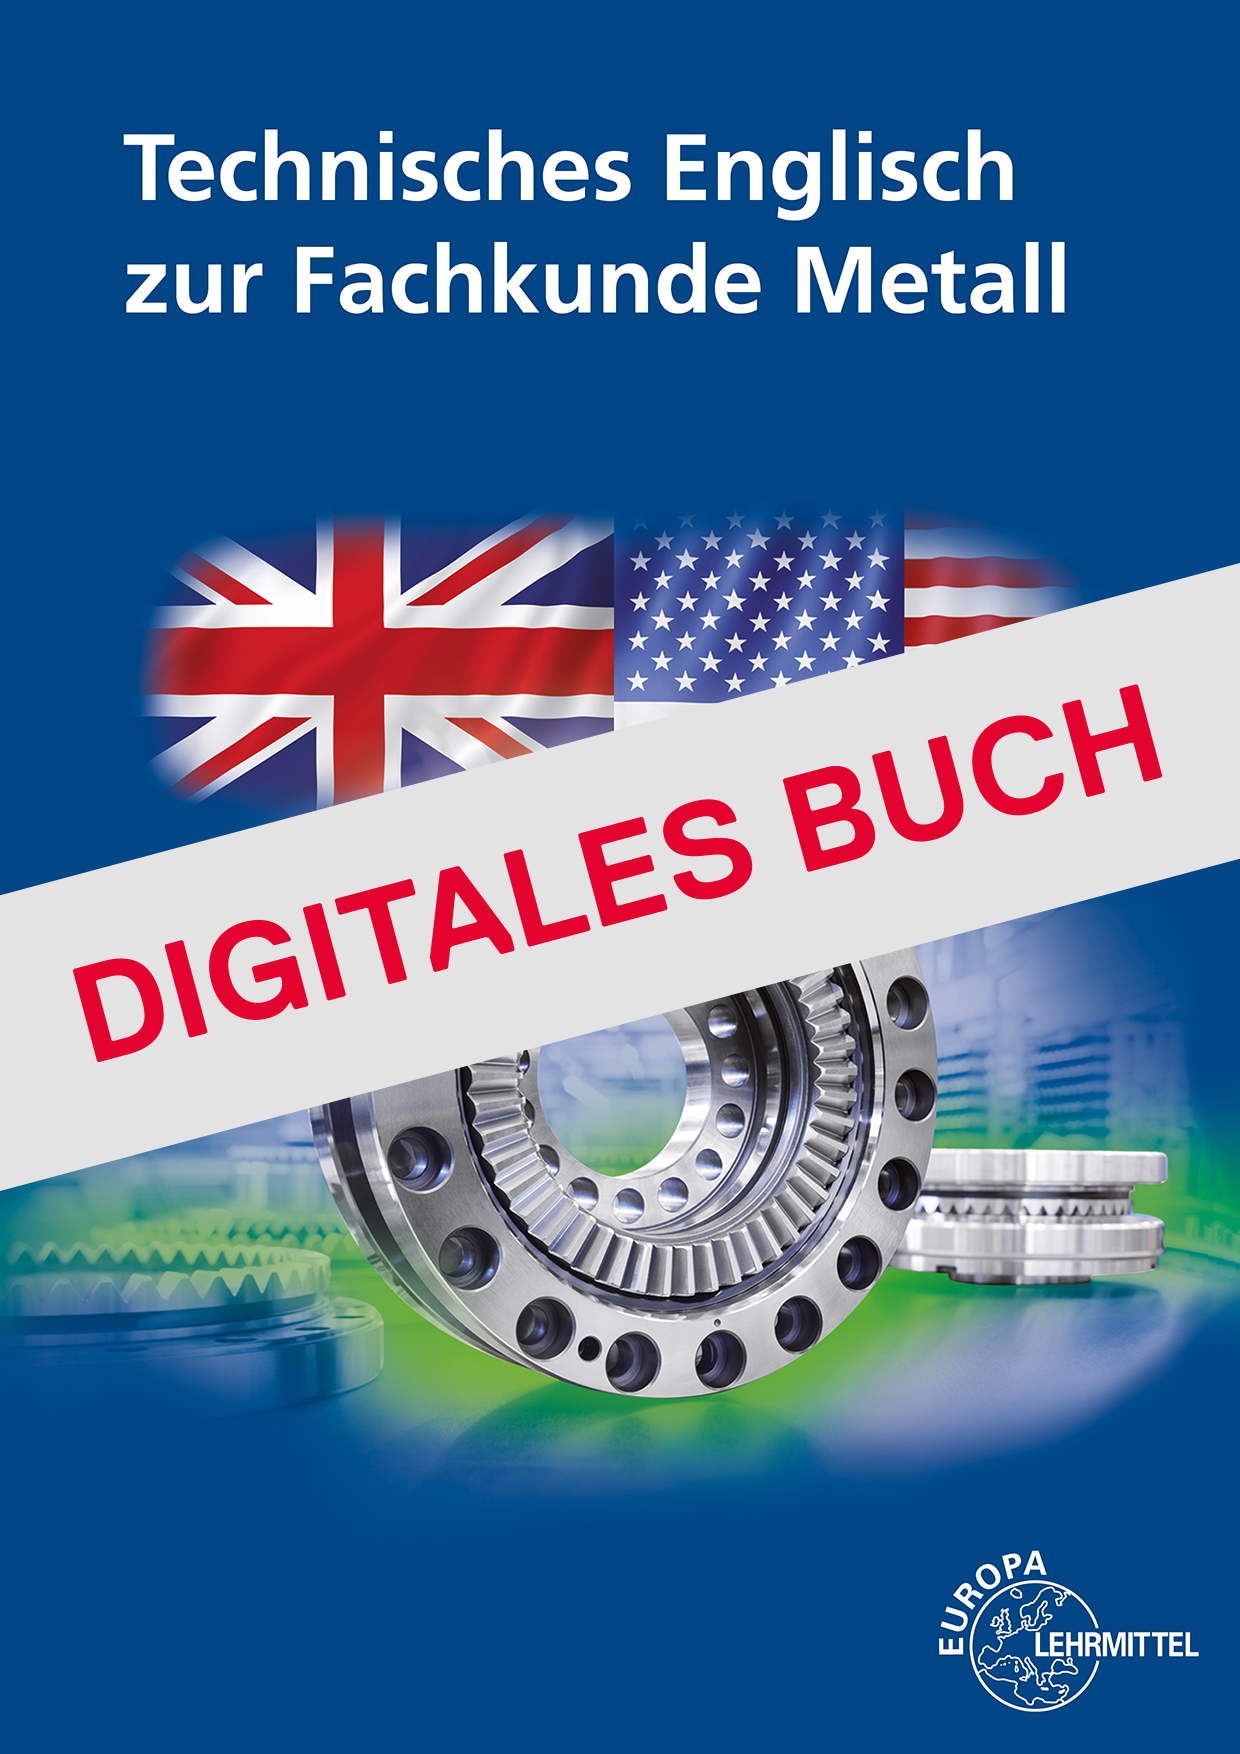 Technisches Englisch zur Fachkunde Metall - Digitales Buch